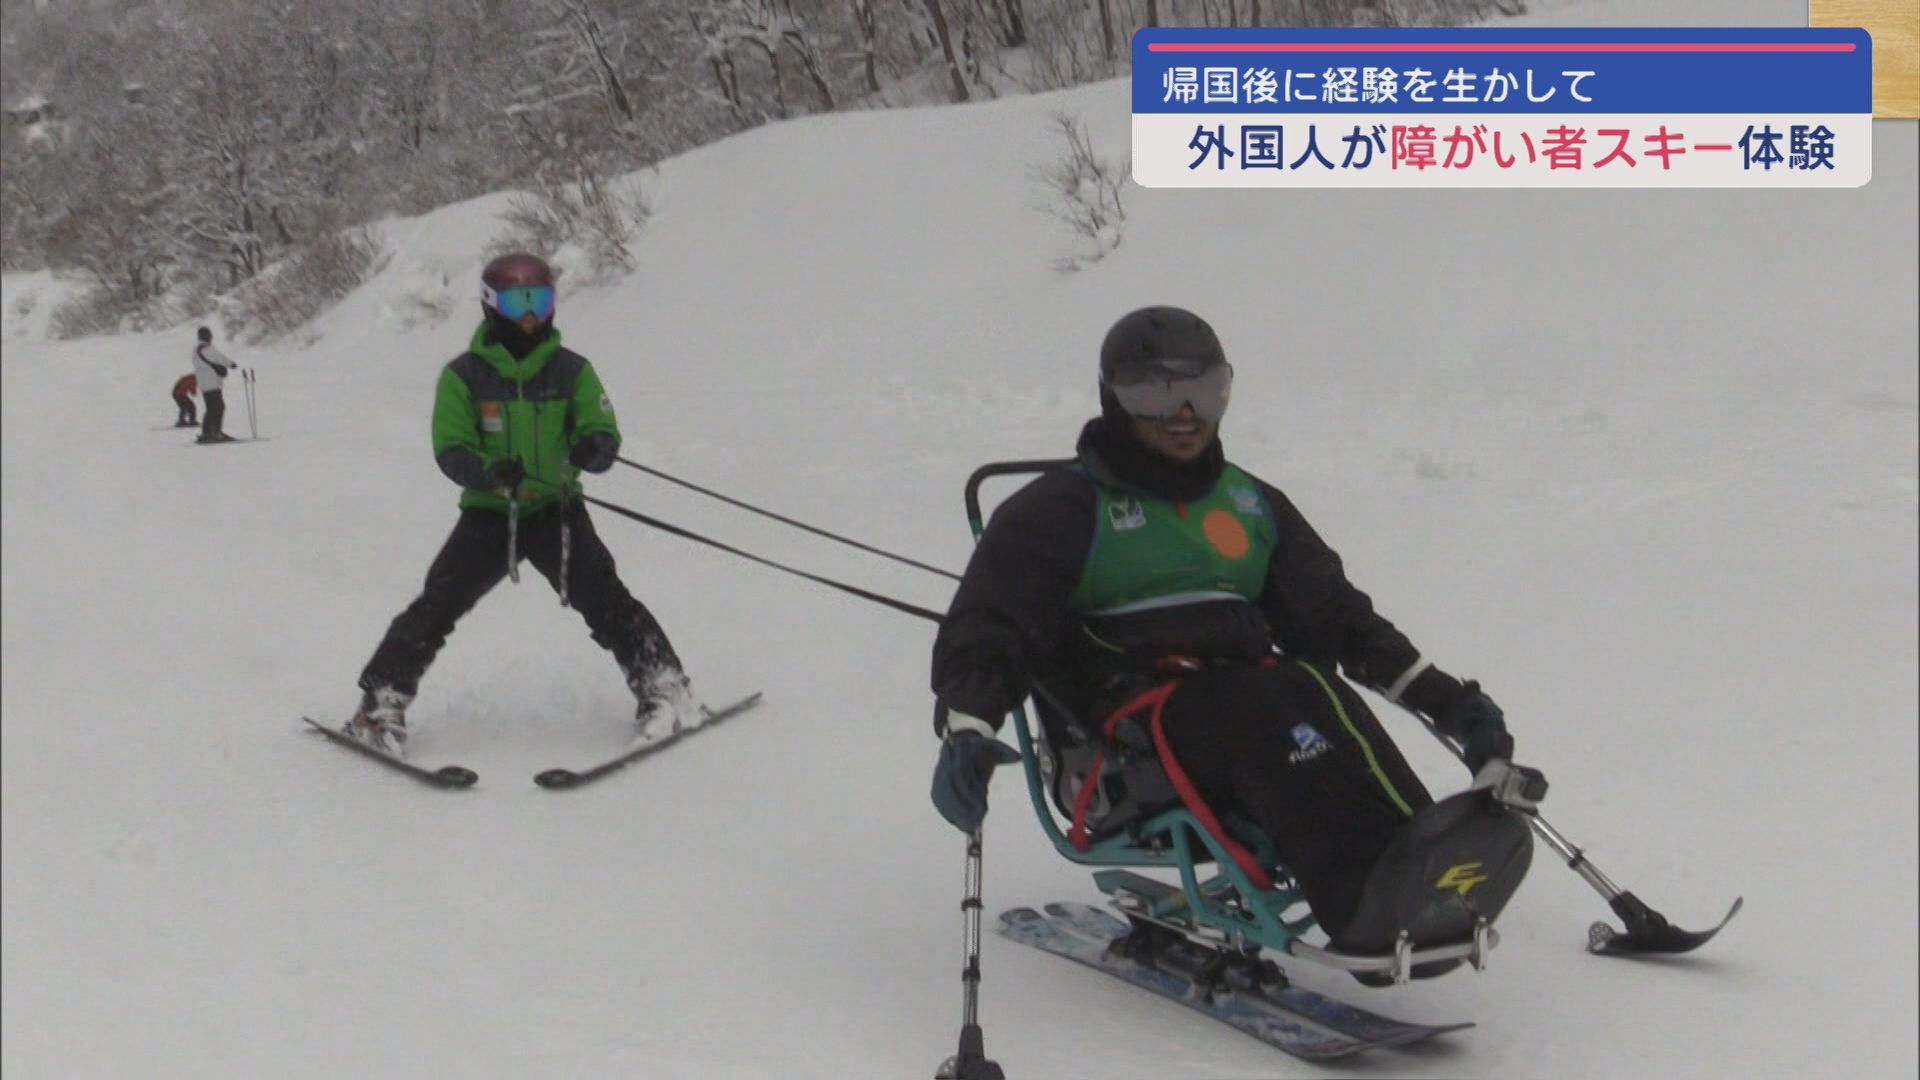 福祉を学ぶ外国人障がい者がスキー体験「少しの工夫」で増える「できること」【新潟】